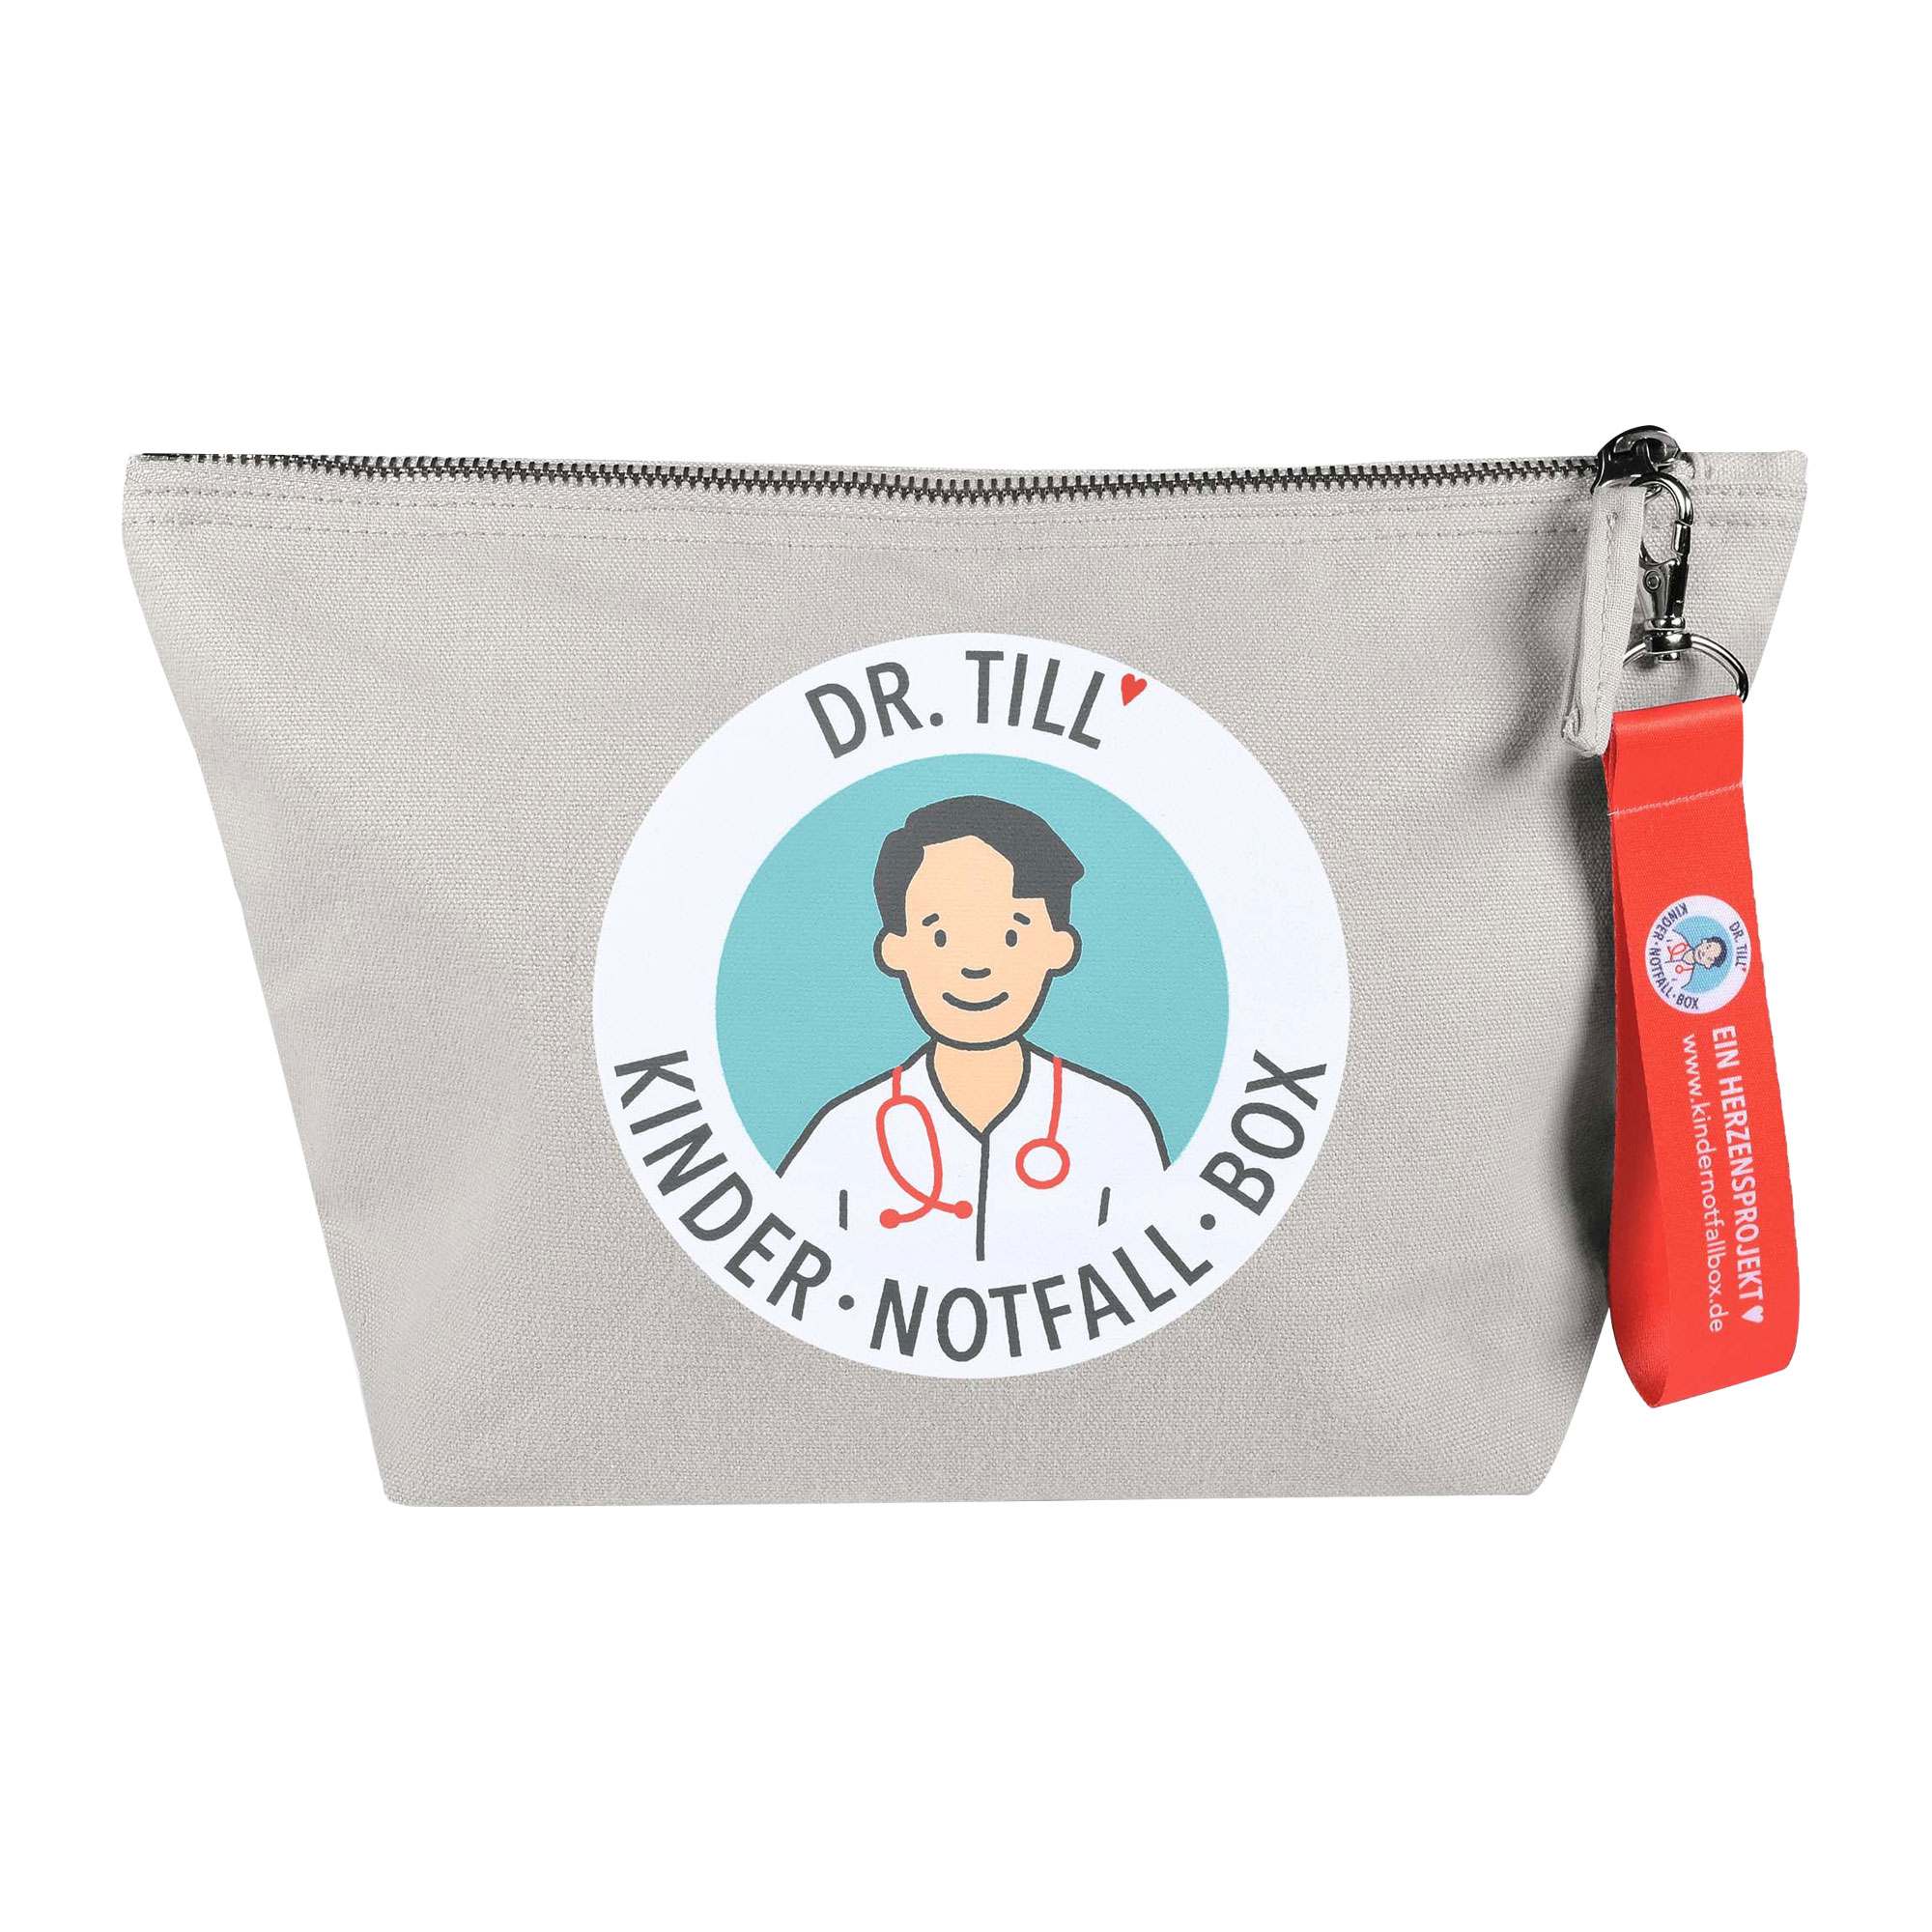 Dr. Till’s Kindernotfallbox-Tasche – für die Erste Hilfe am Kind.